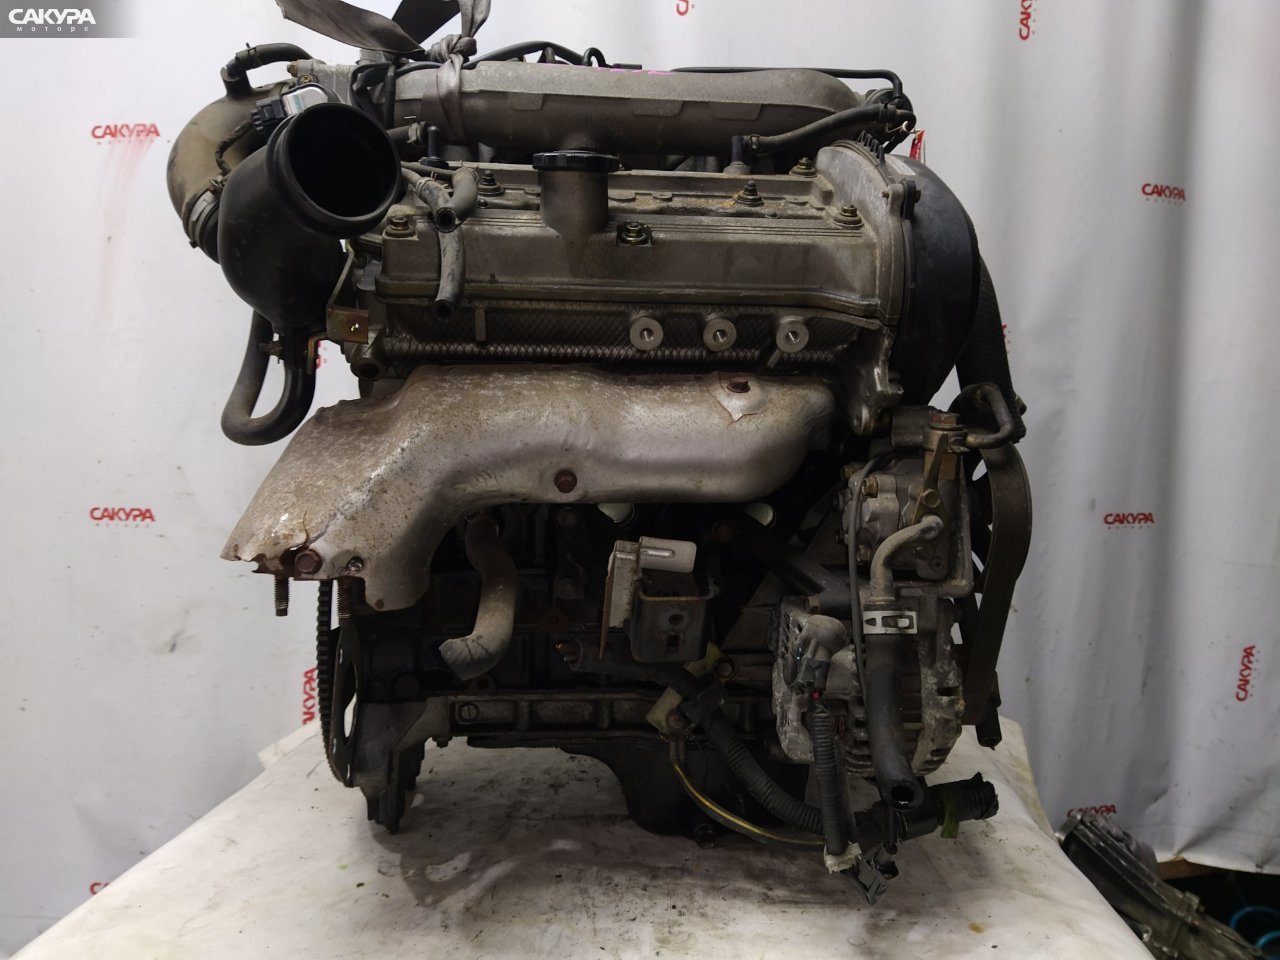 Двигатель Mazda Bongo Friendee SG5W J5-D: купить в Сакура Красноярск.